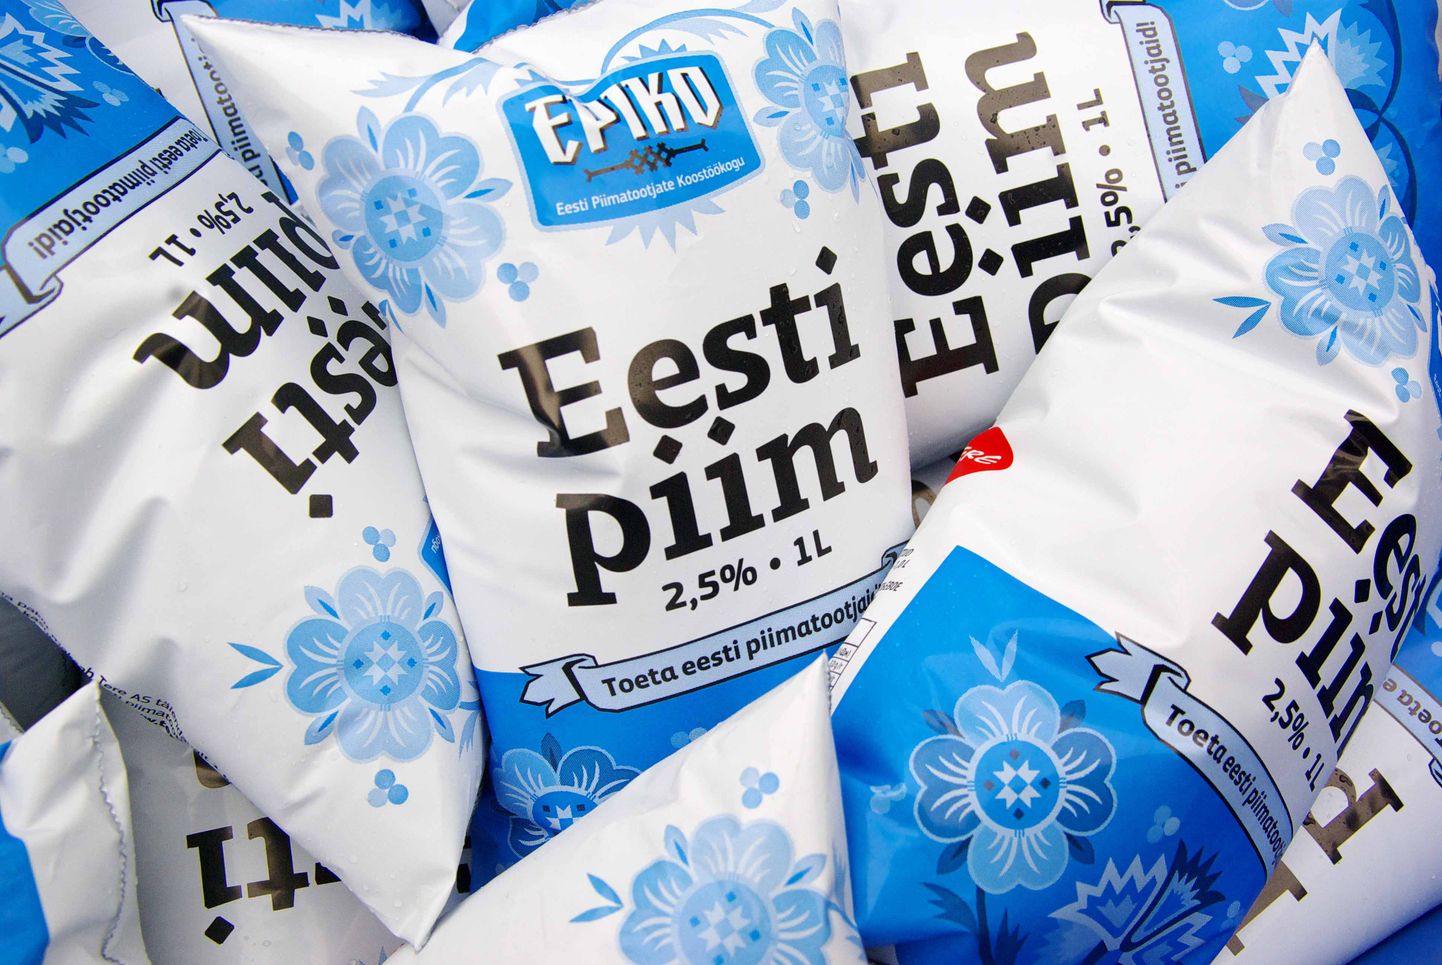 Молоко Eesti piim. Снимок иллюстративный.